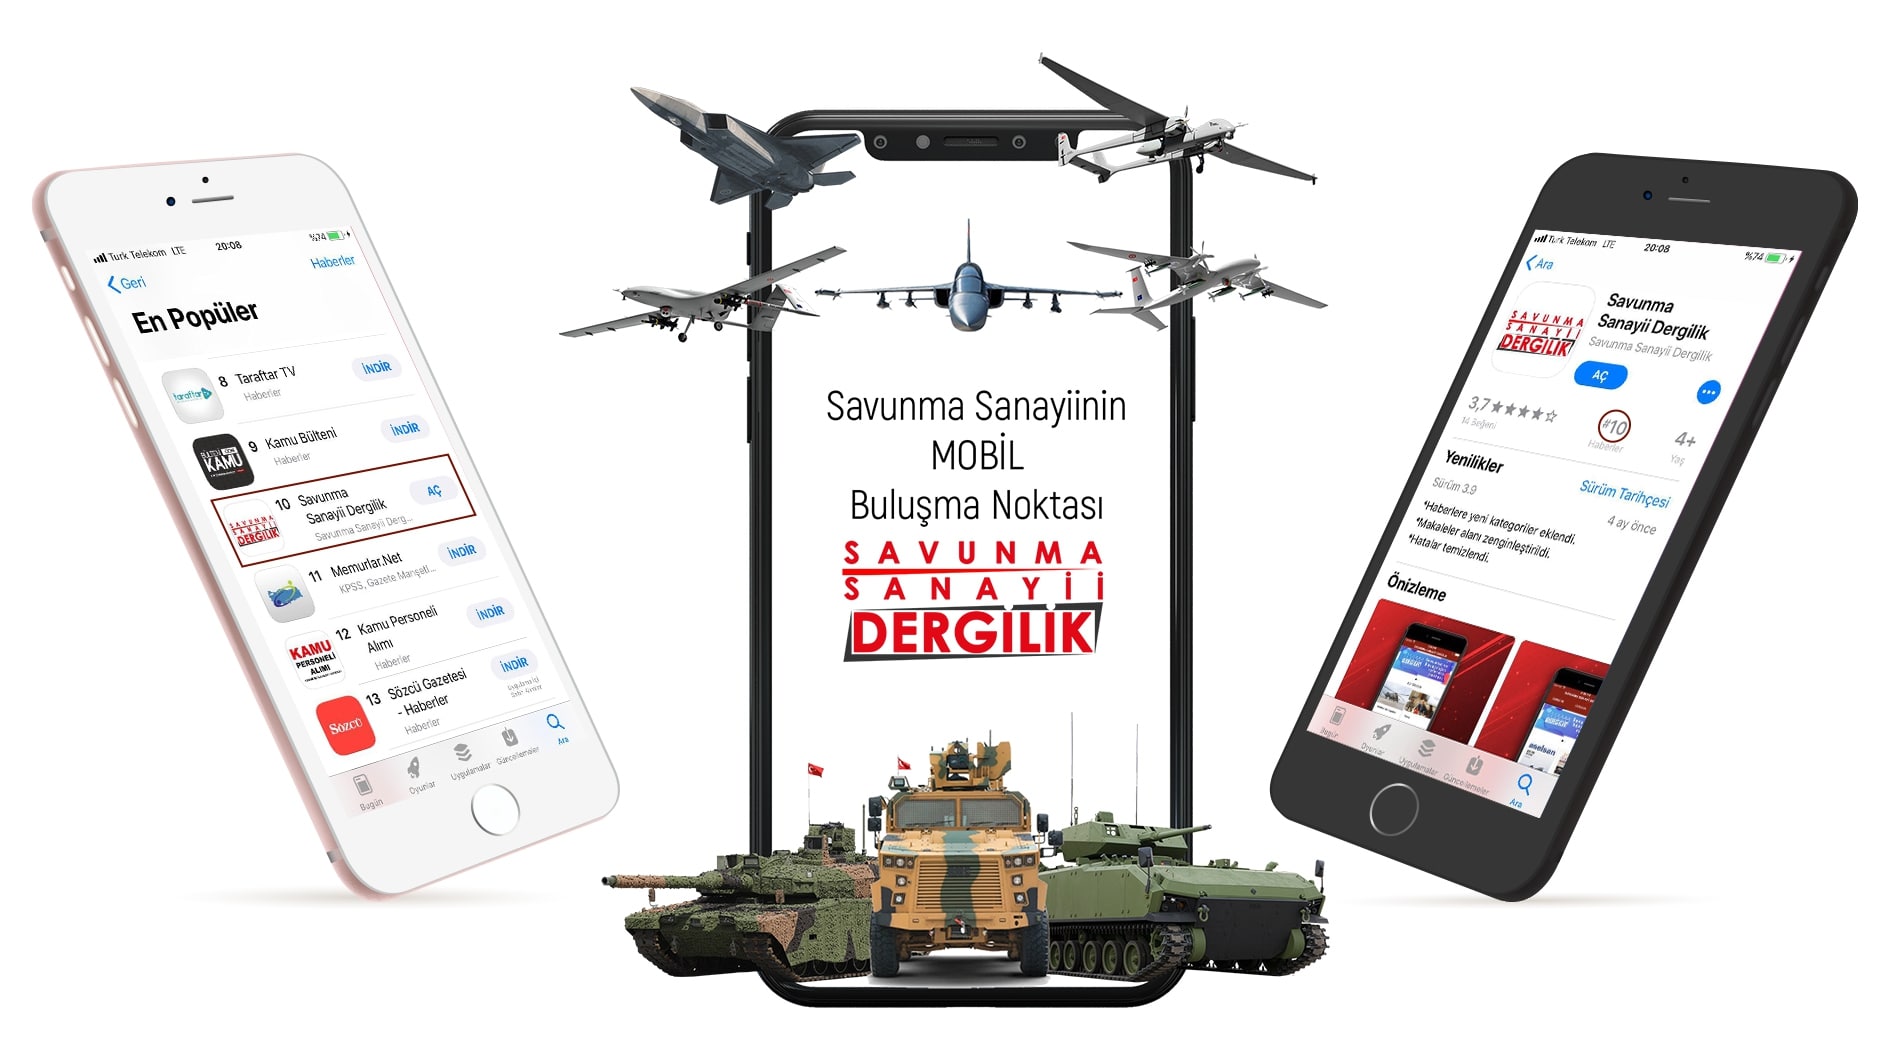 Türkiye’nin en popüler 10 mobil uygulamasından biriyiz